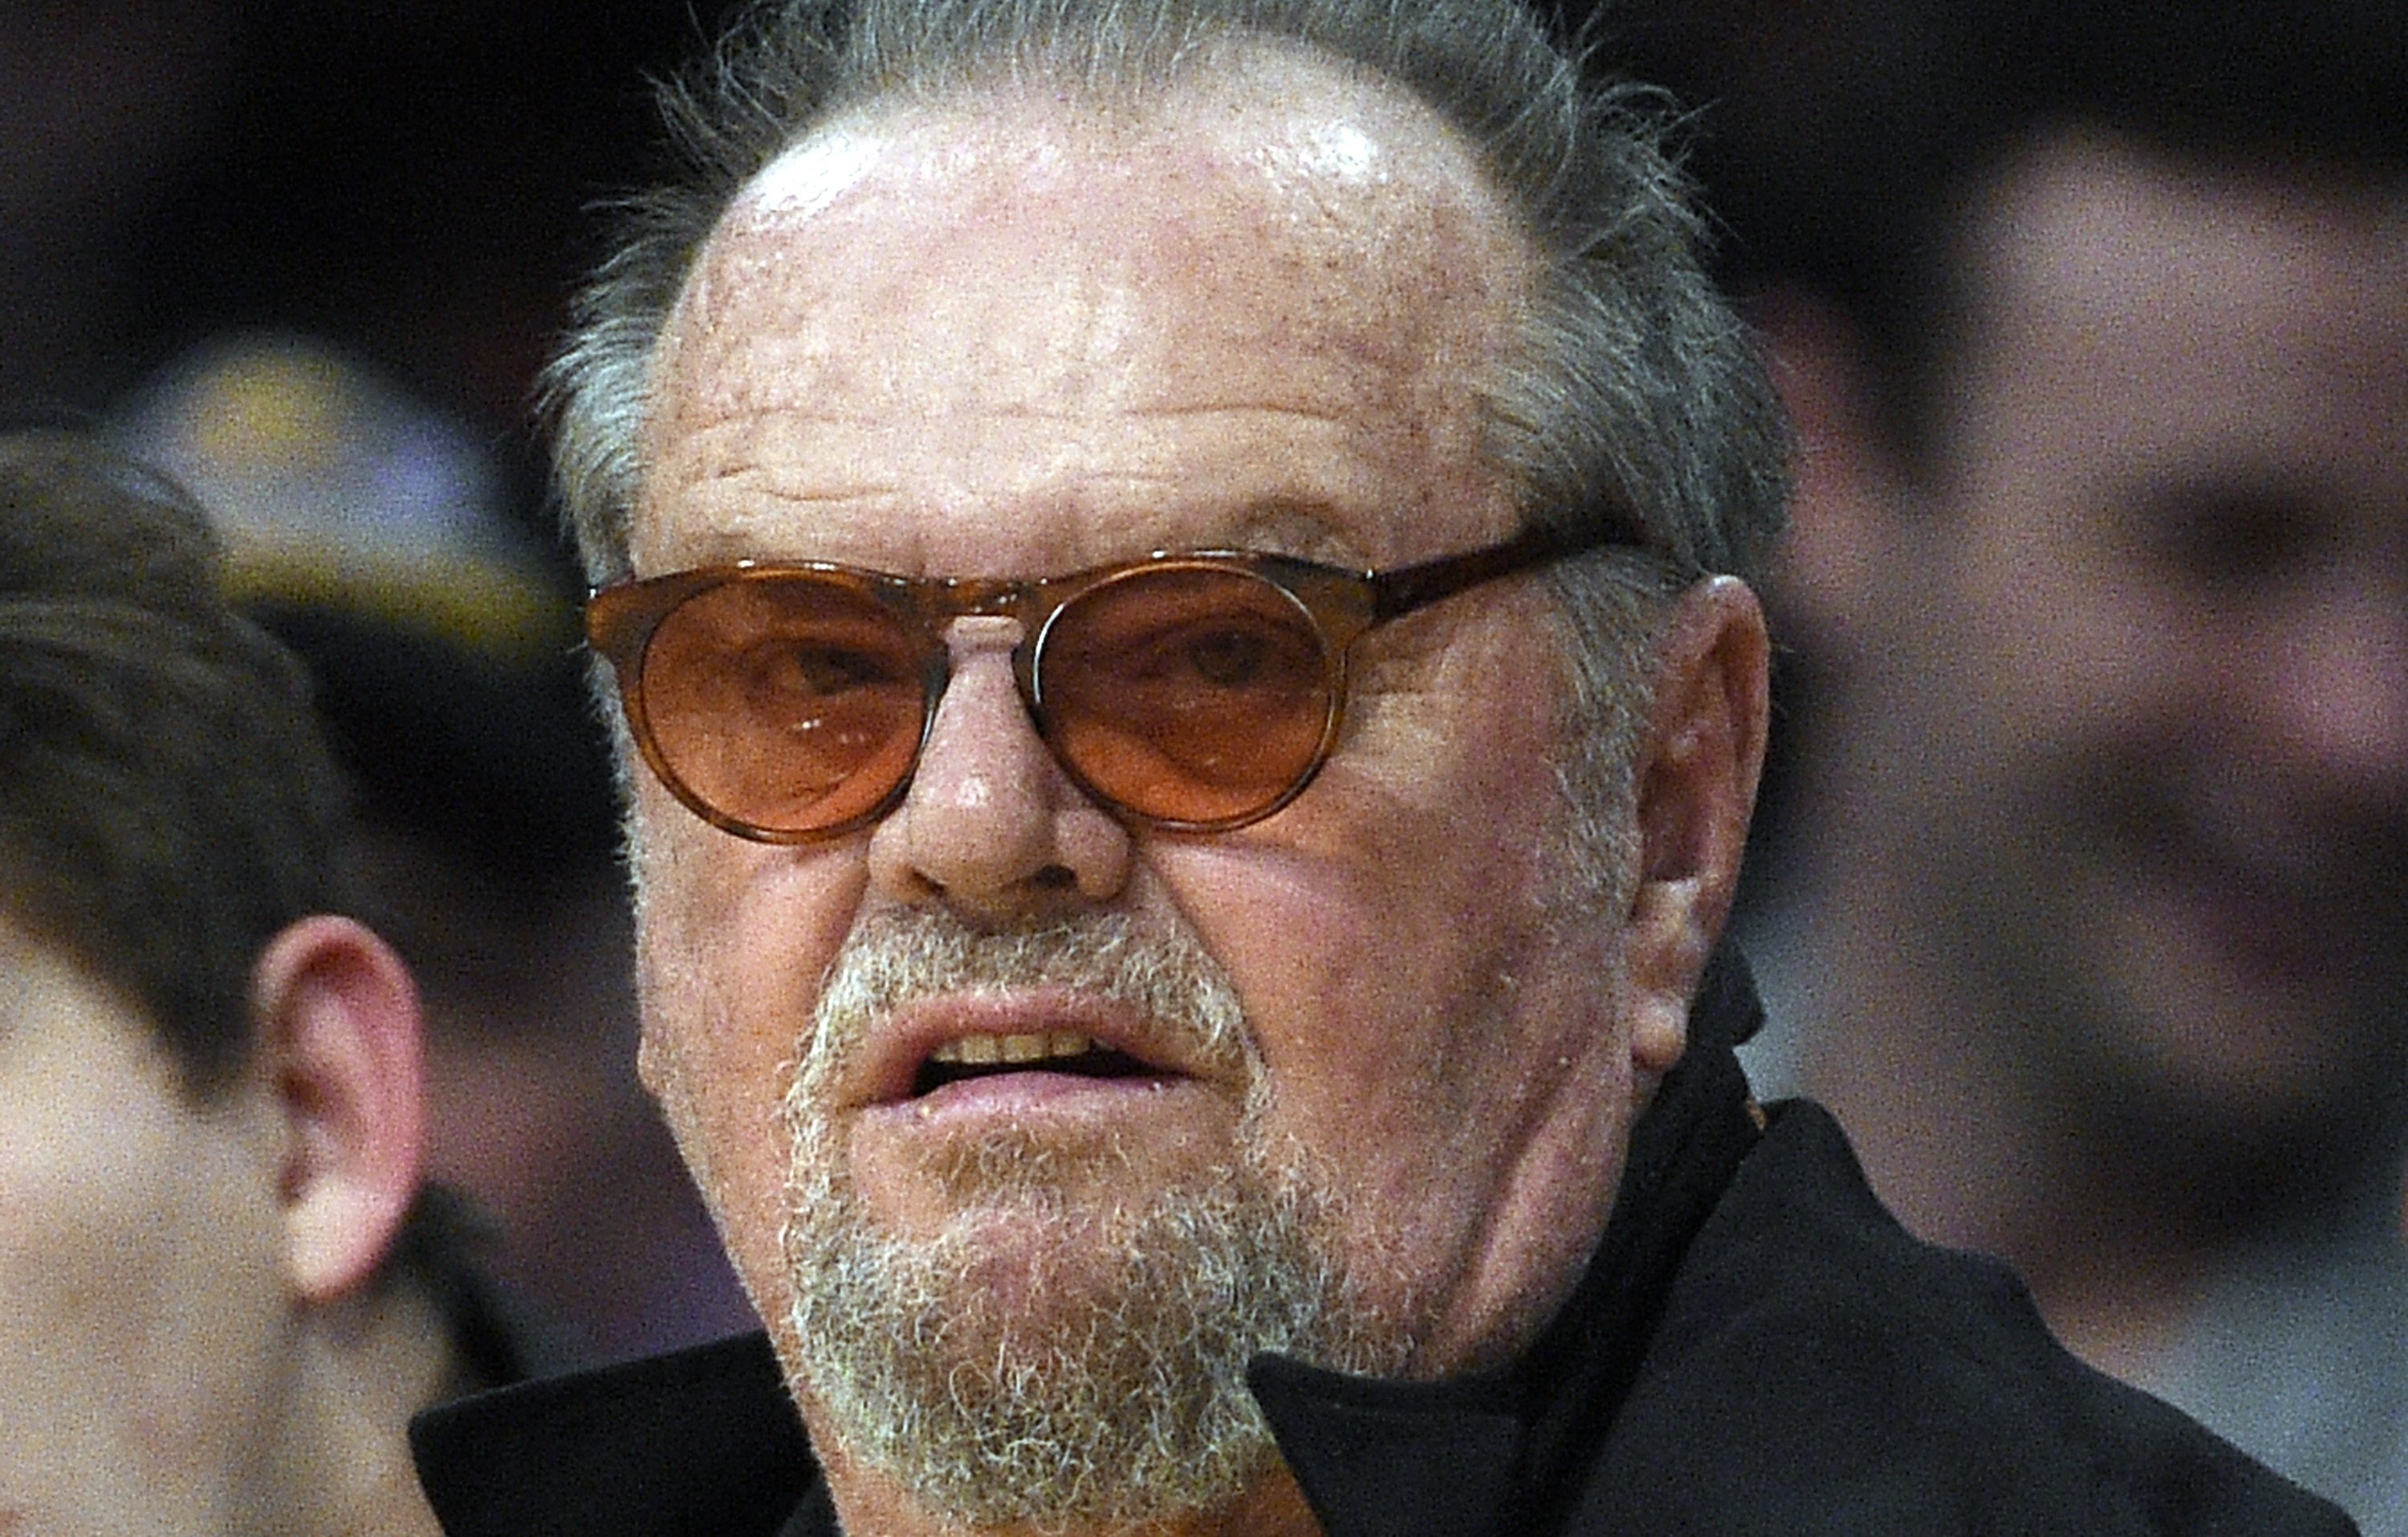 Jack Nicholsont másfél év után nyilvános eseményen kapták lencsevégre -  Blikk